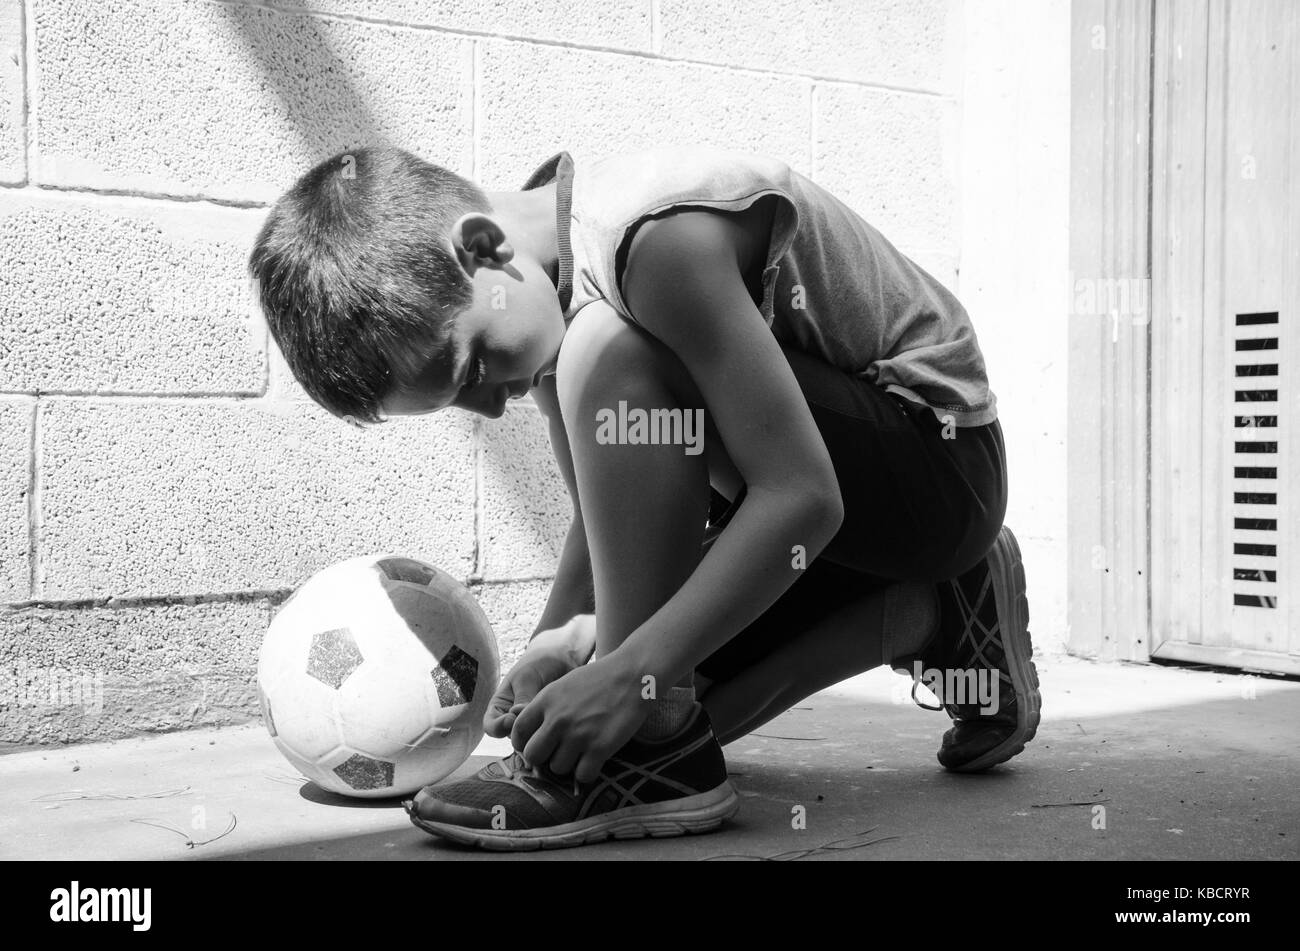 Street football. un jeune joueur de football porte ses chaussures et est  prêt pour une formation solitaire dans le garage de l'image en noir et  blanc Photo Stock - Alamy